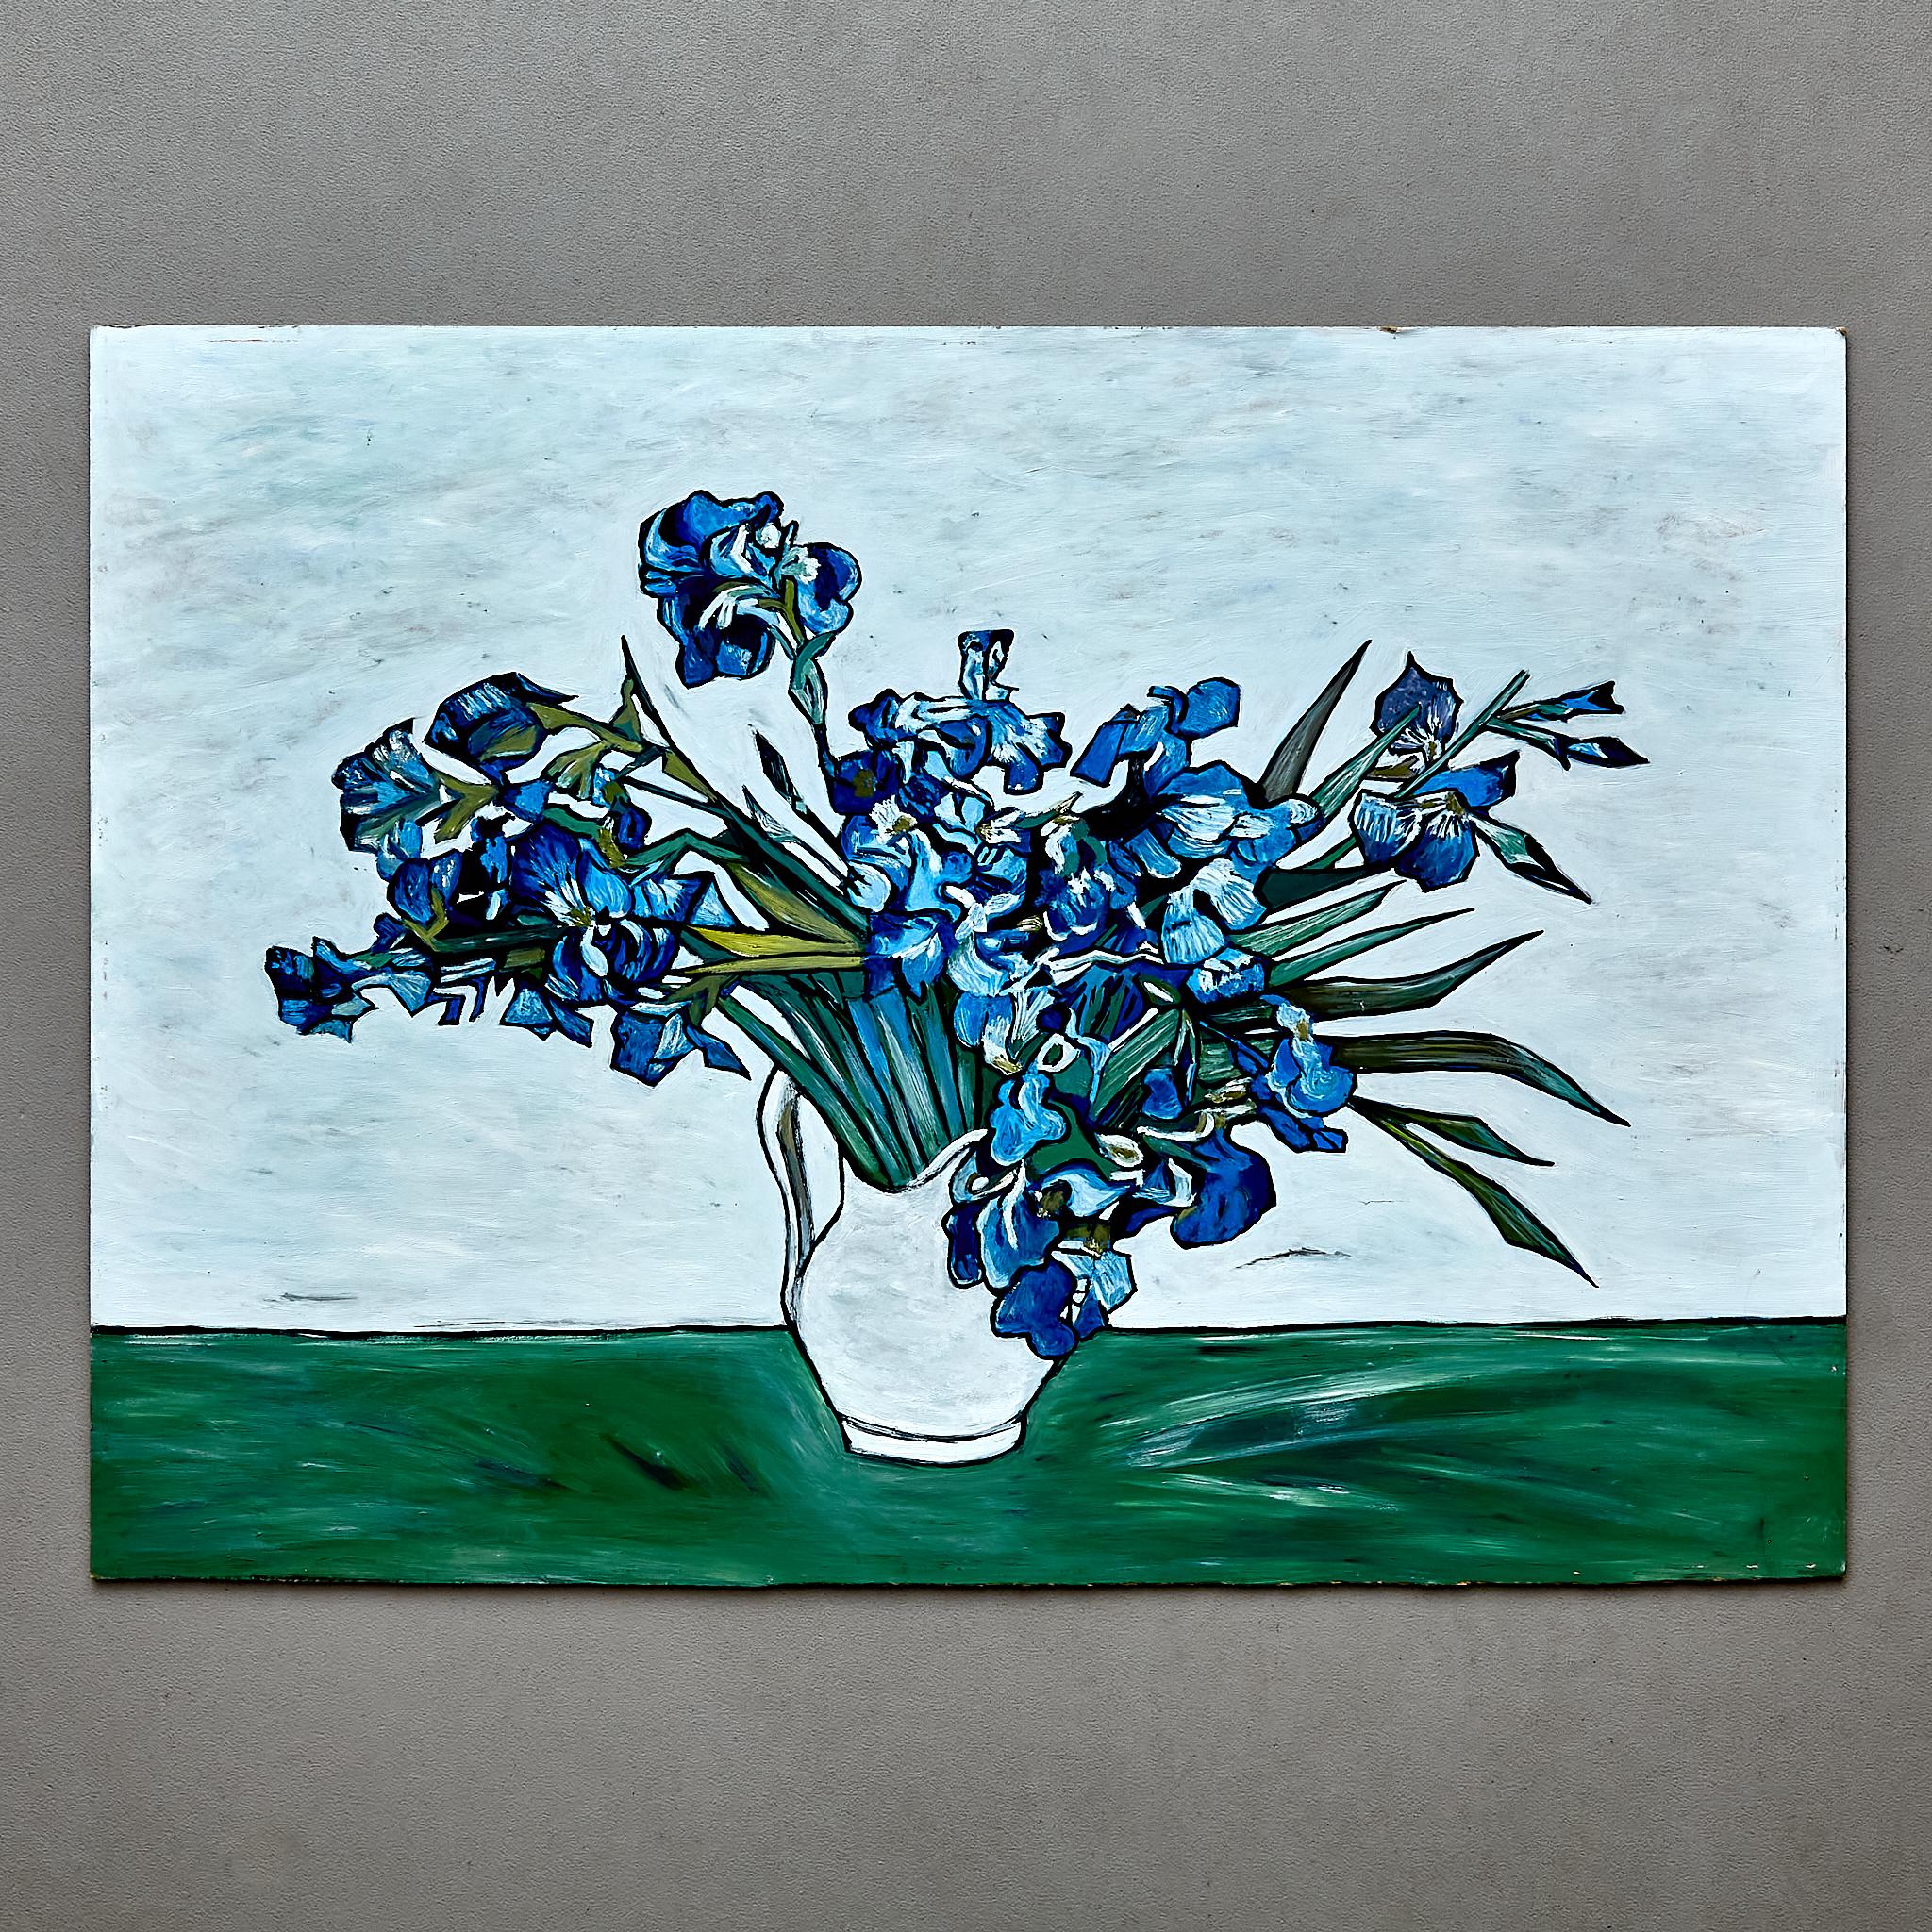 Malen im Stil von Van Gogh.

Hergestellt in Frankreich von einem unbekannten Autor, ca. 2000.
Gemischte Medien.

In ursprünglichem Zustand mit geringen Gebrauchsspuren, die dem Alter und dem Gebrauch entsprechen, wobei eine schöne Patina erhalten